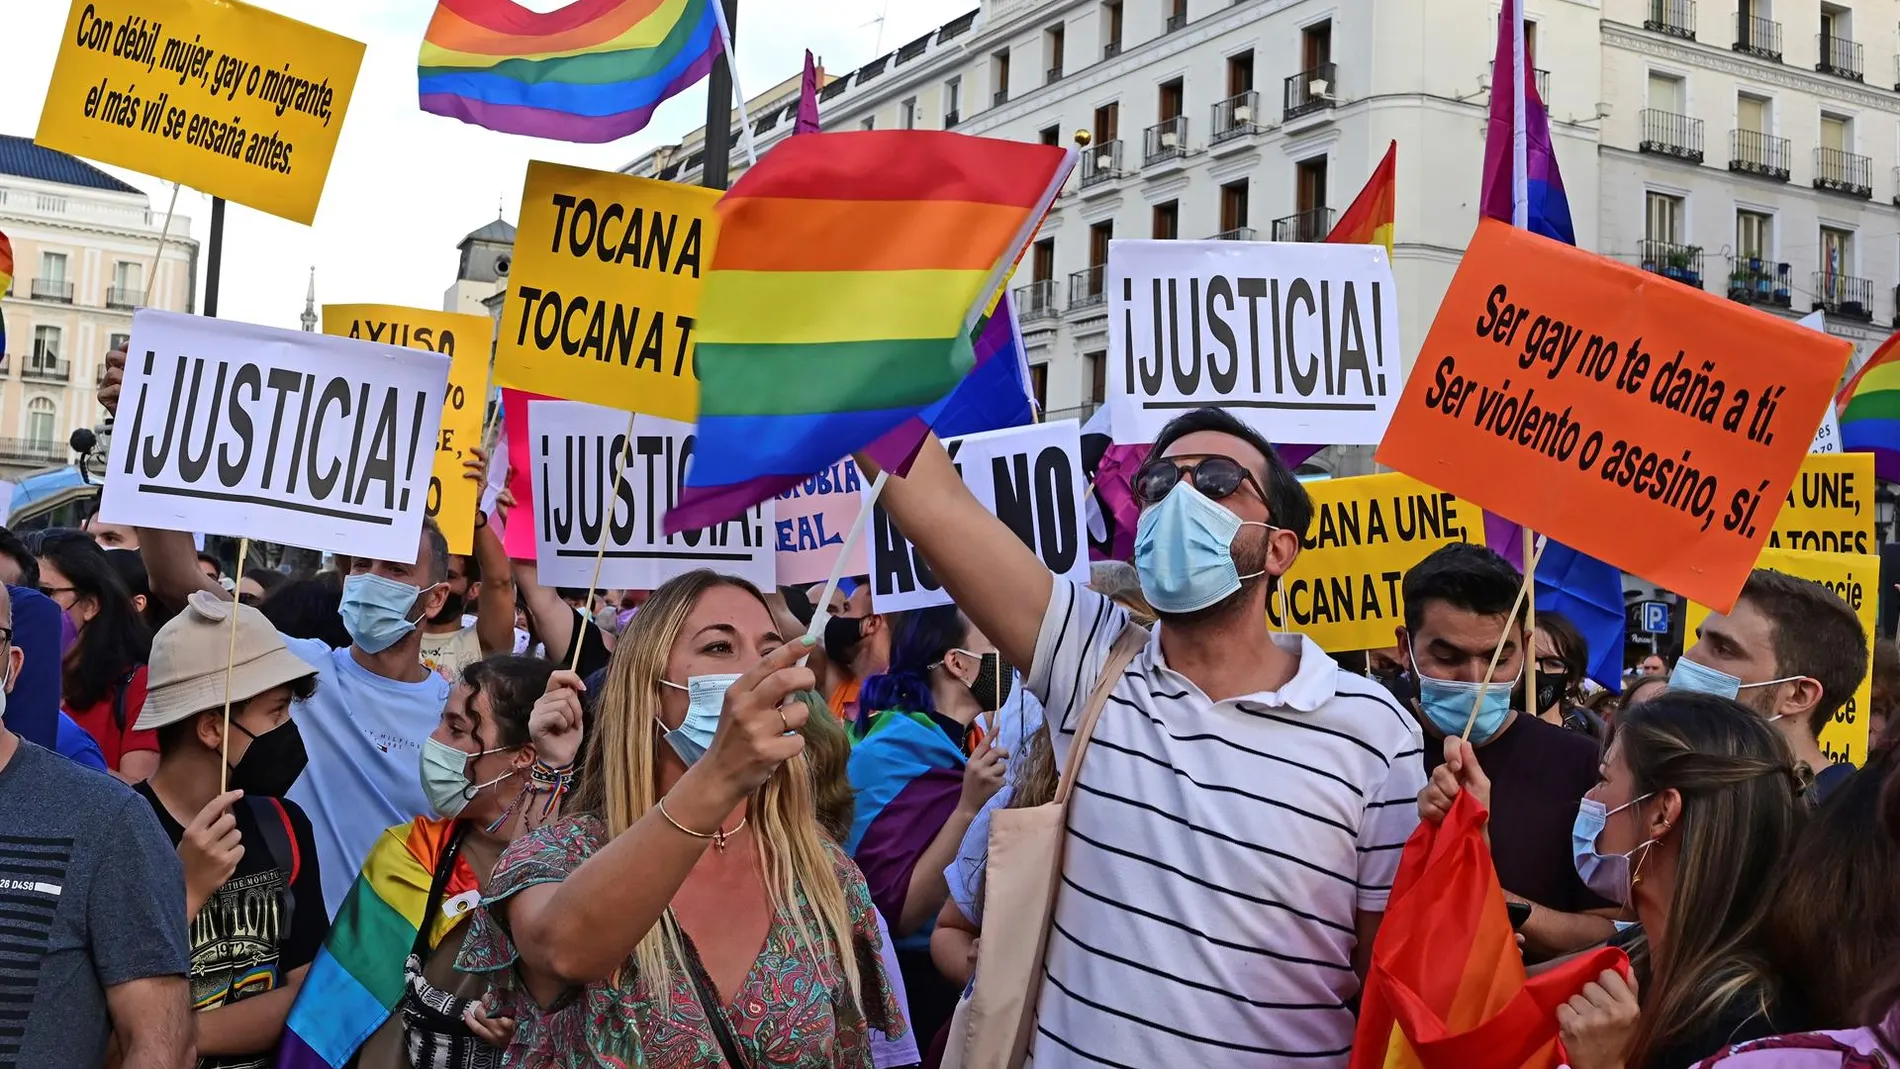 El colectivo LGBT se manifiesta en Madrid para que se protejan sus derechos y que cesen las agresiones